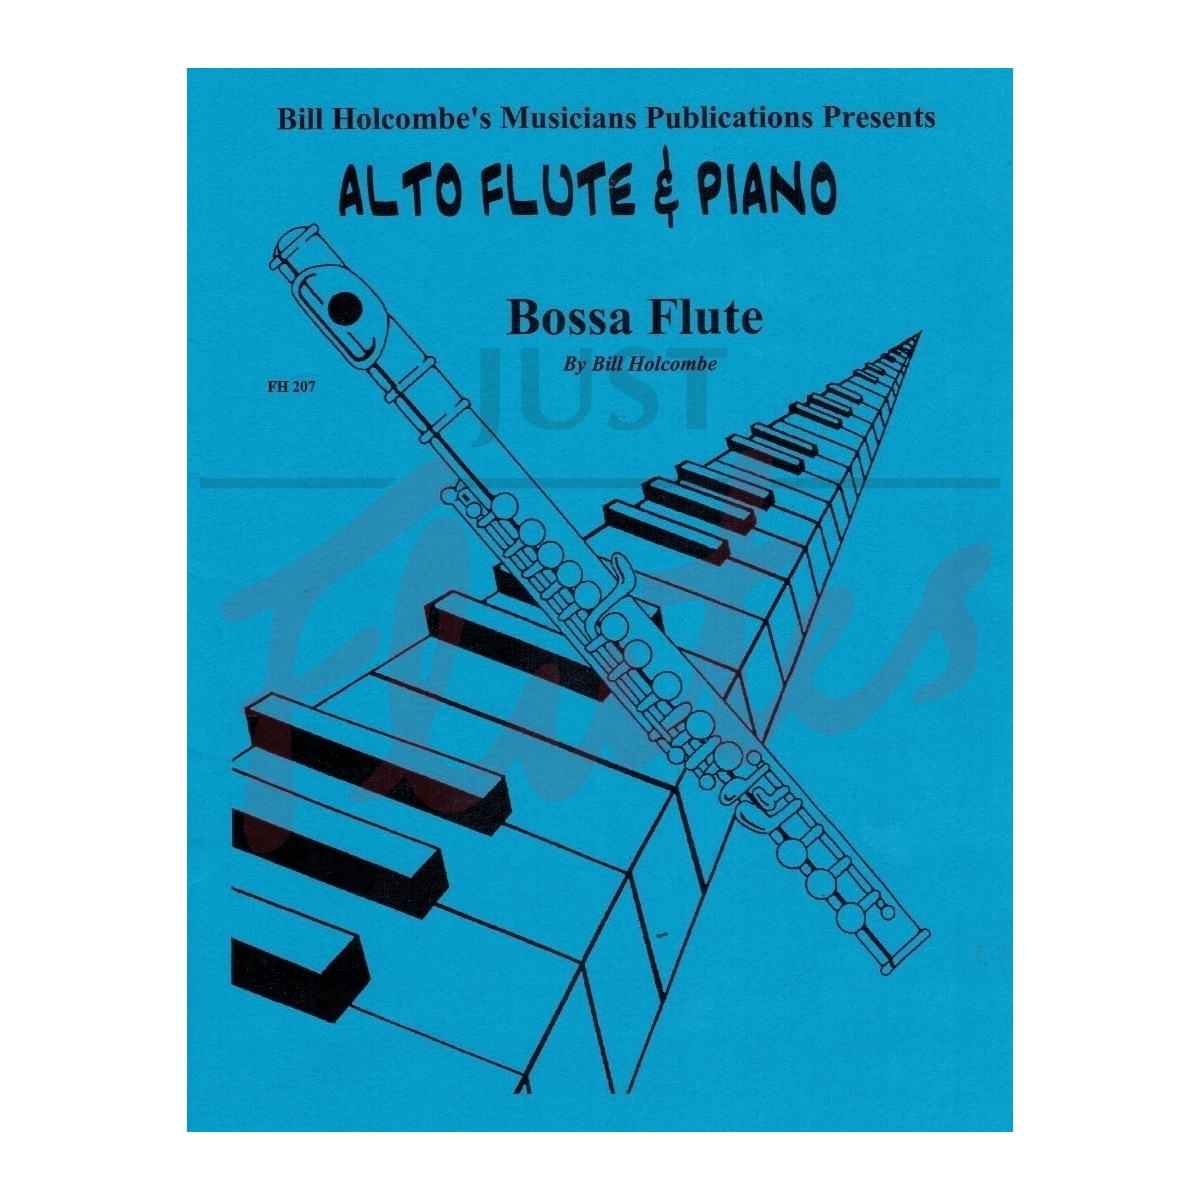 Bossa Flute for Alto Flute and Piano